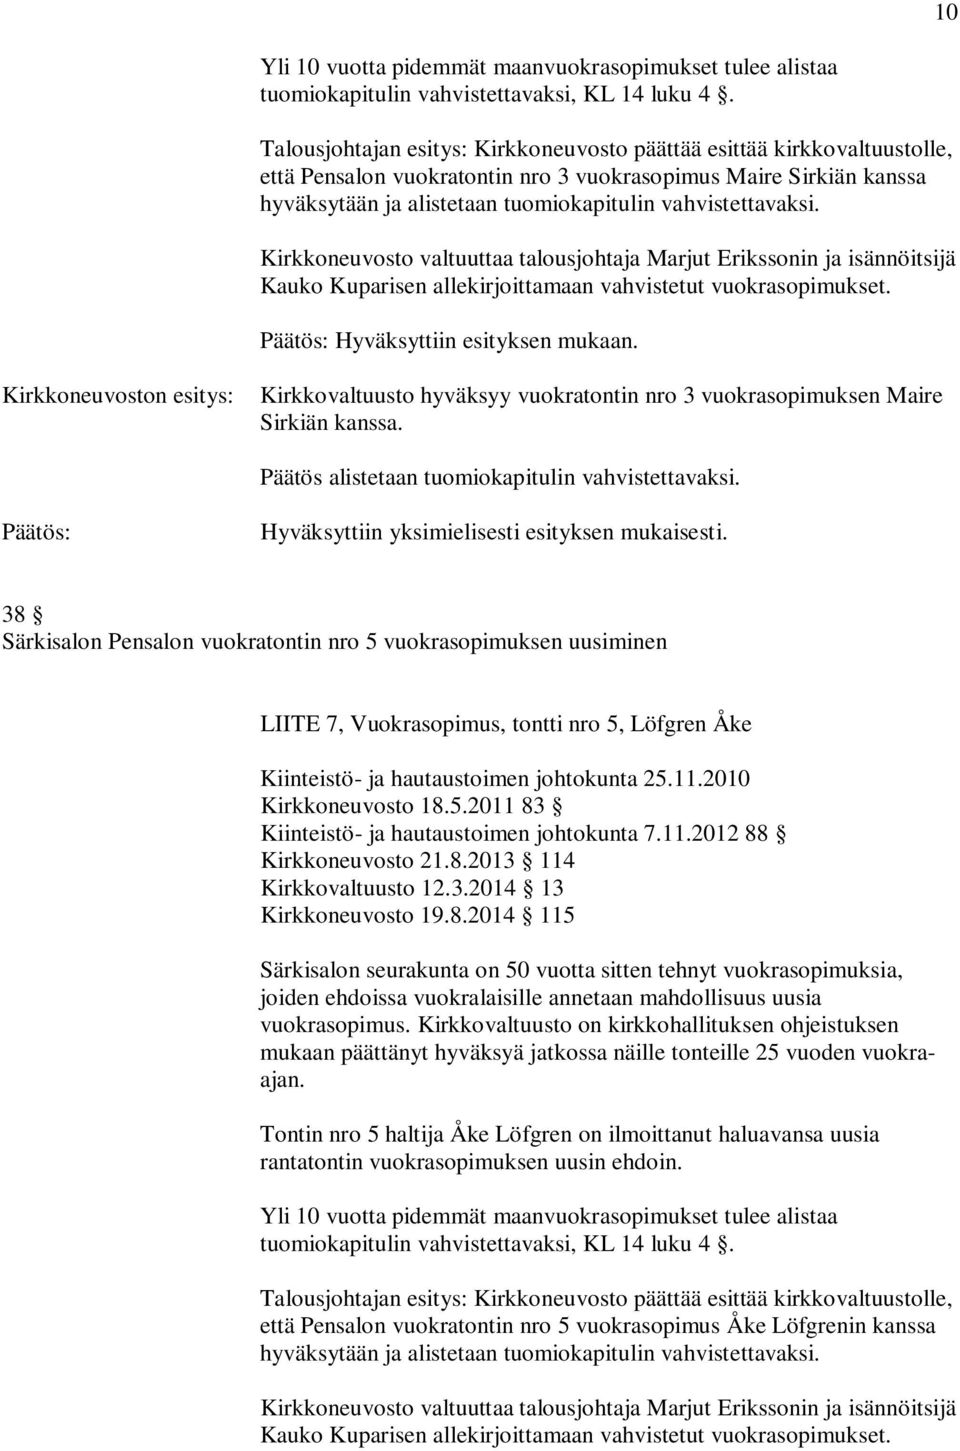 Kirkkoneuvoston esitys: Kirkkovaltuusto hyväksyy vuokratontin nro 3 vuokrasopimuksen Maire Sirkiän kanssa.